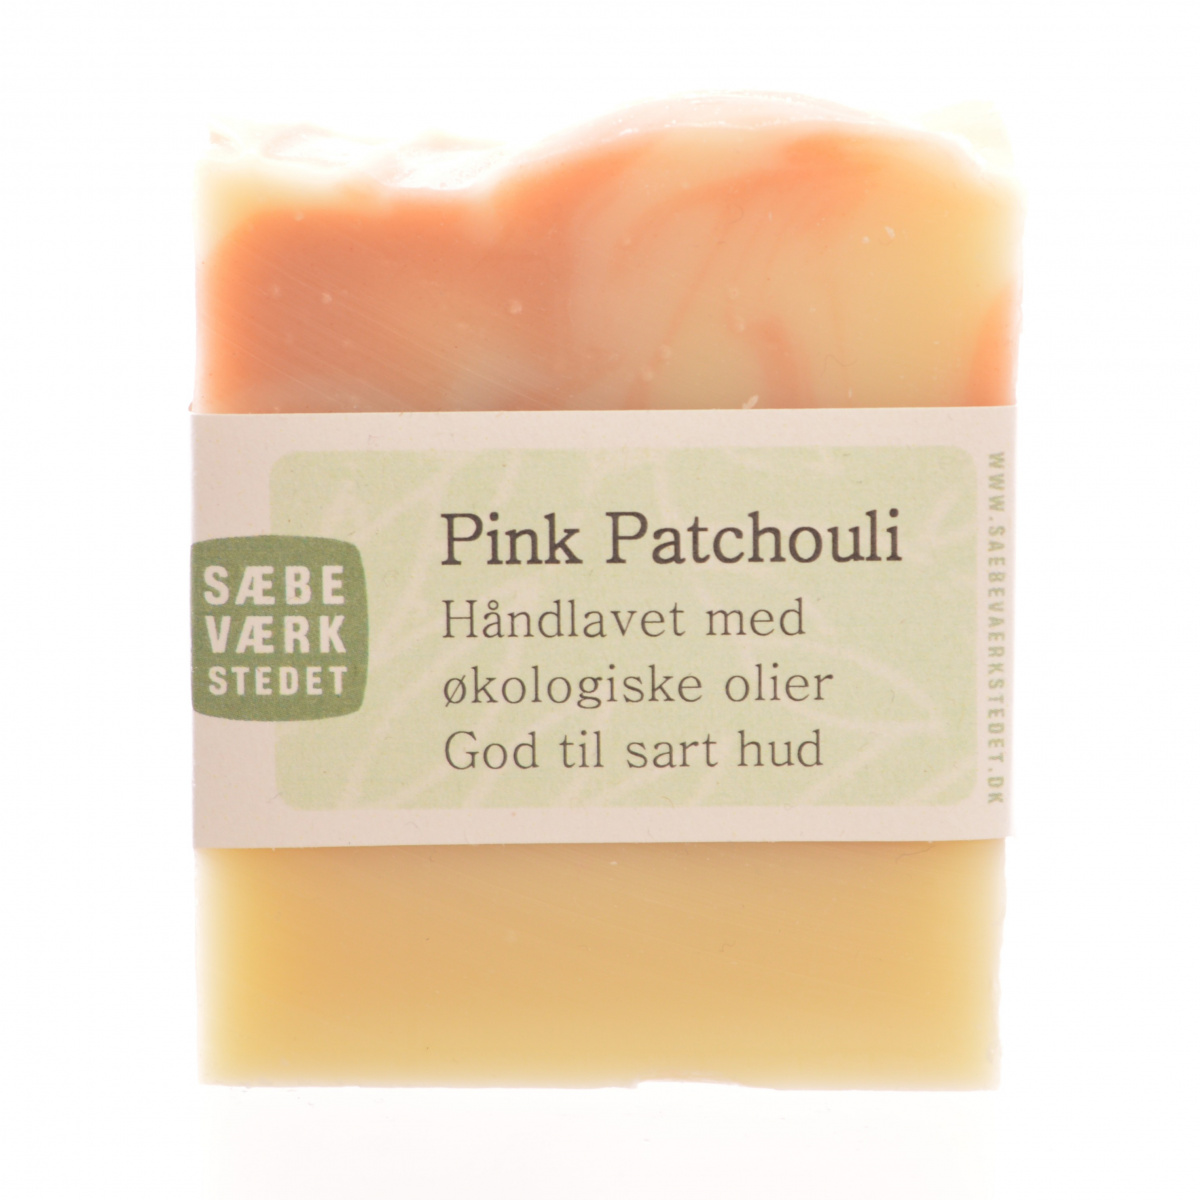 Sæbeværkstedet hand soap - pink patchouli